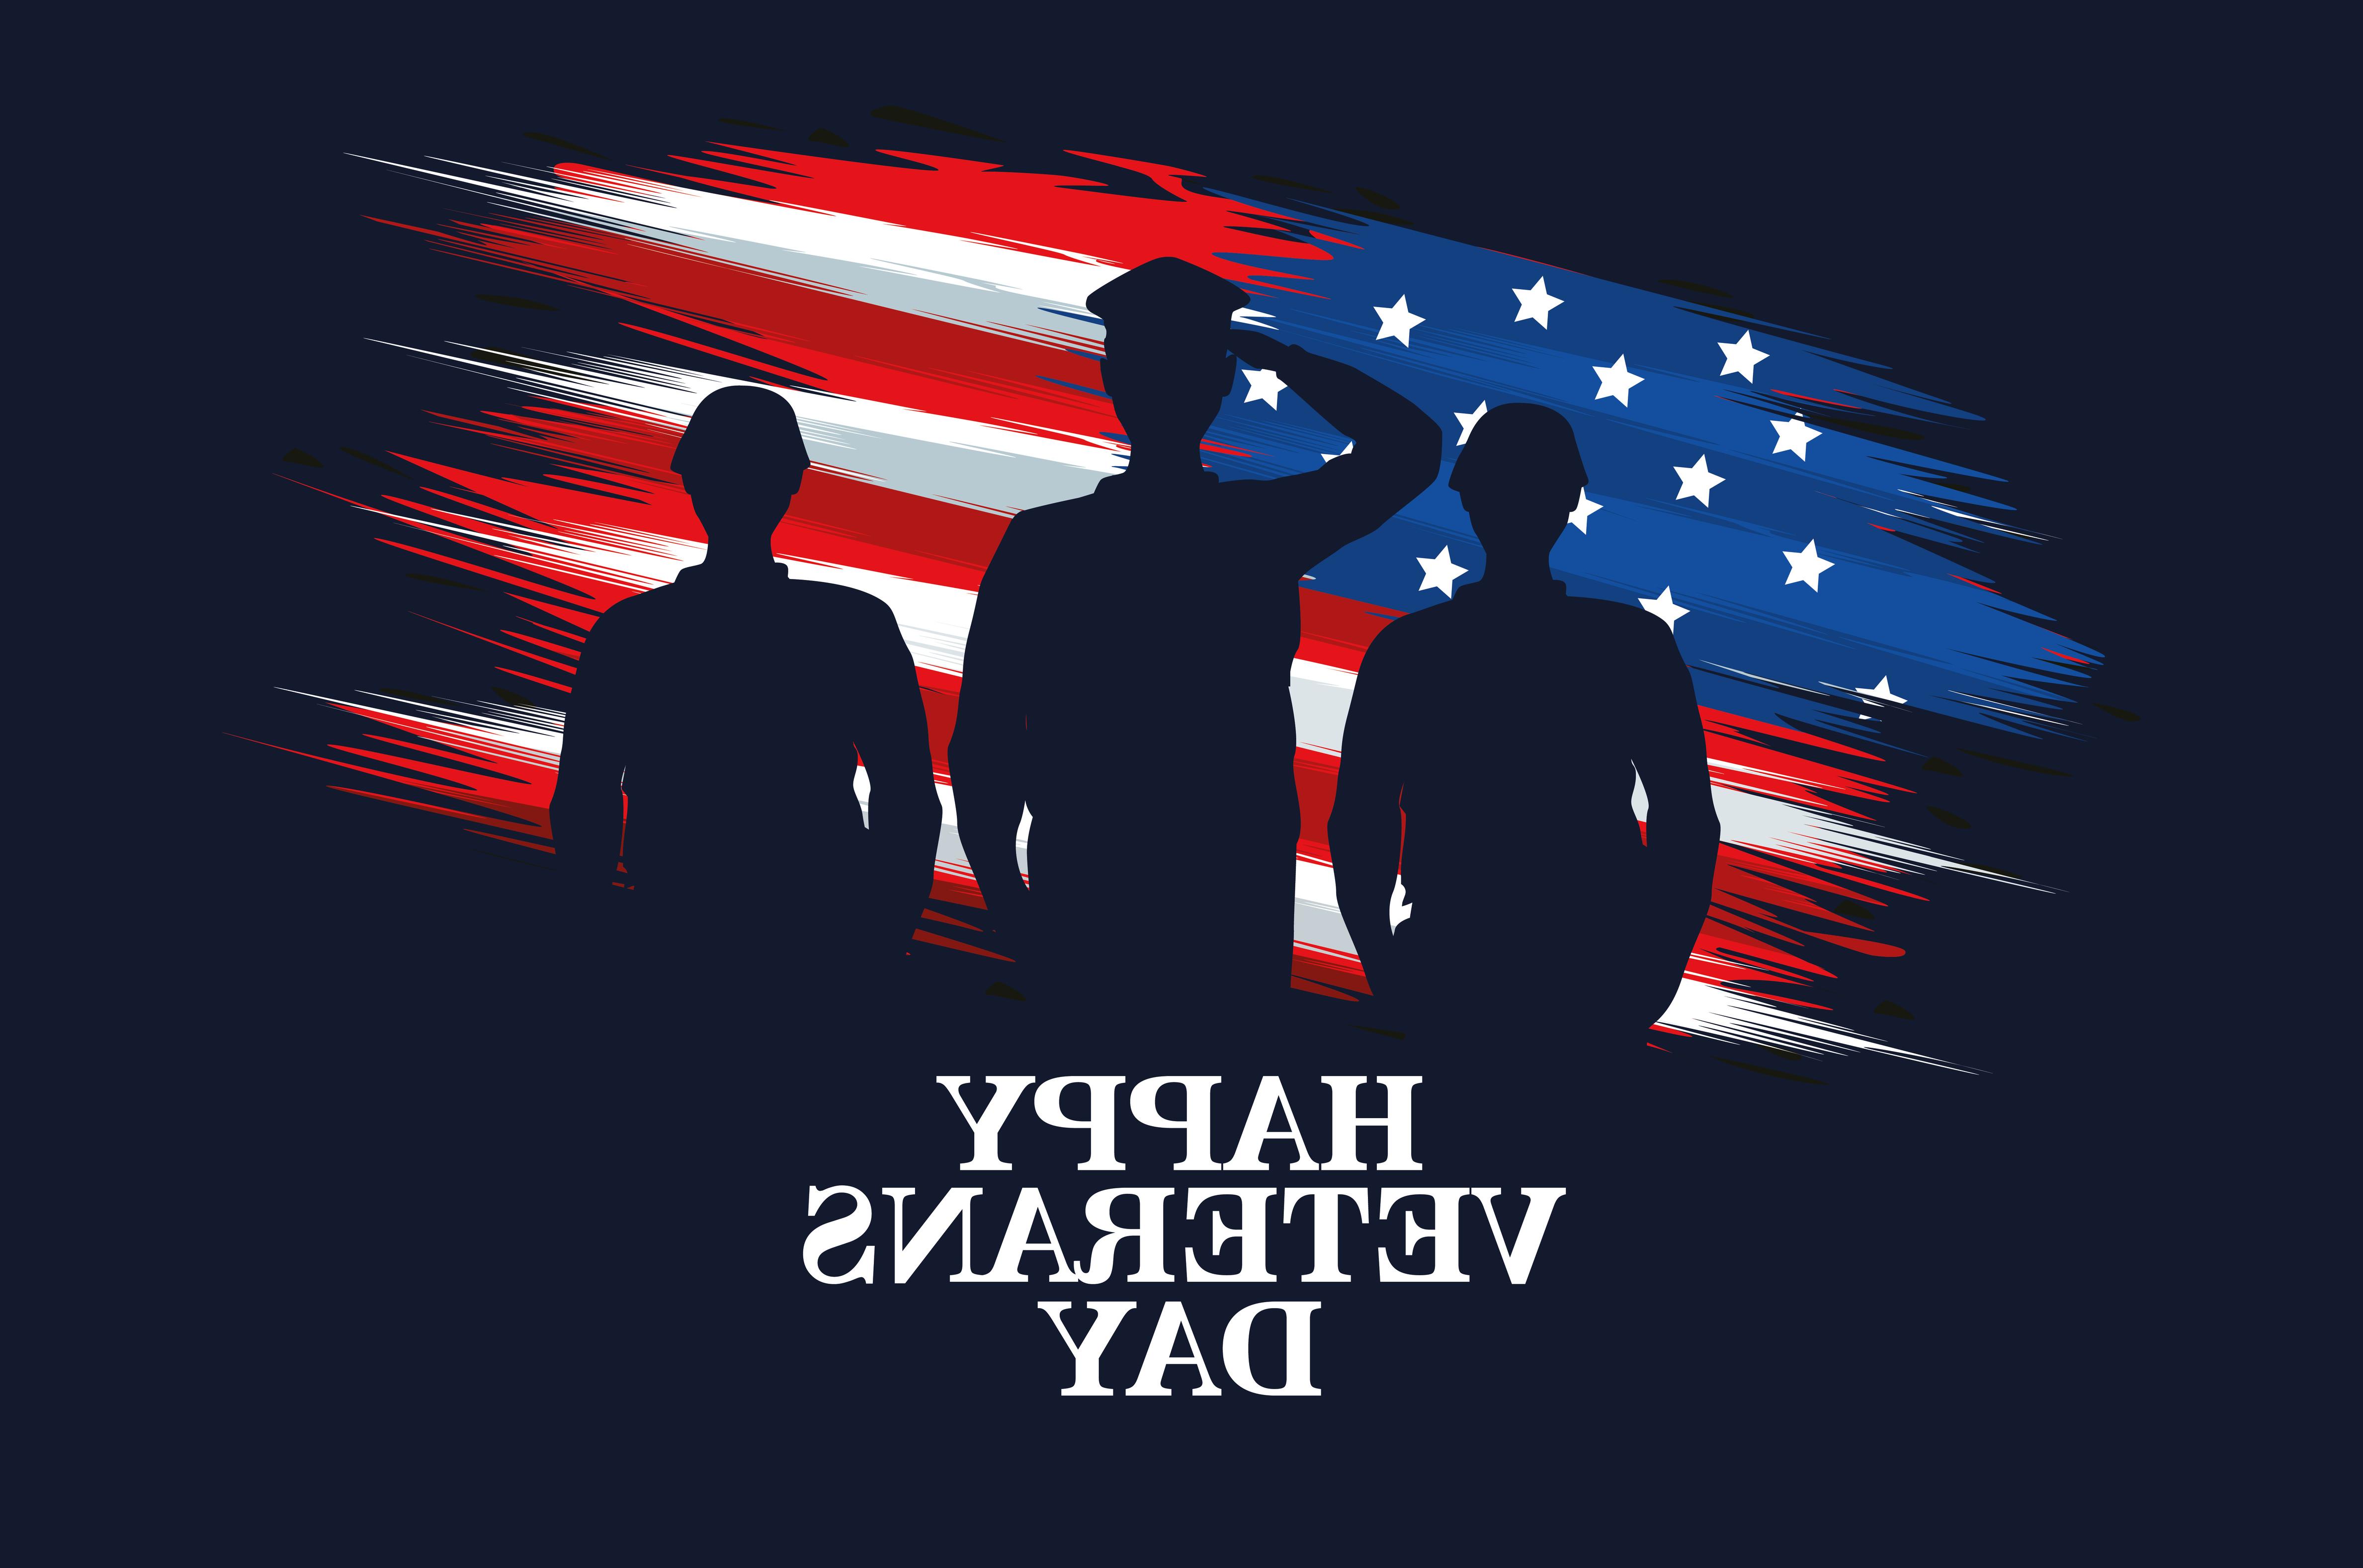 背景是风格化的美国国旗，前景是武装人员的剪影，上面写着“退伍军人节快乐”。